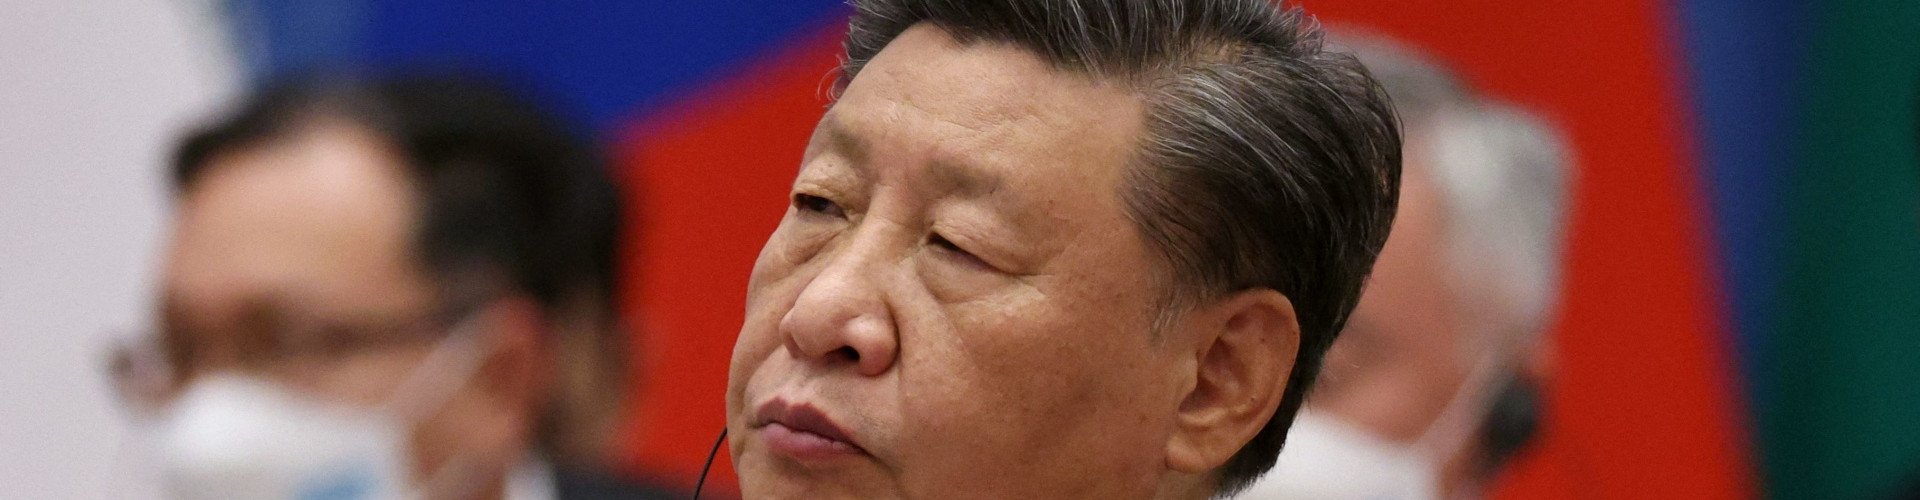  Menanti Langkah Xi Jinping Selamatkan Ekonomi China